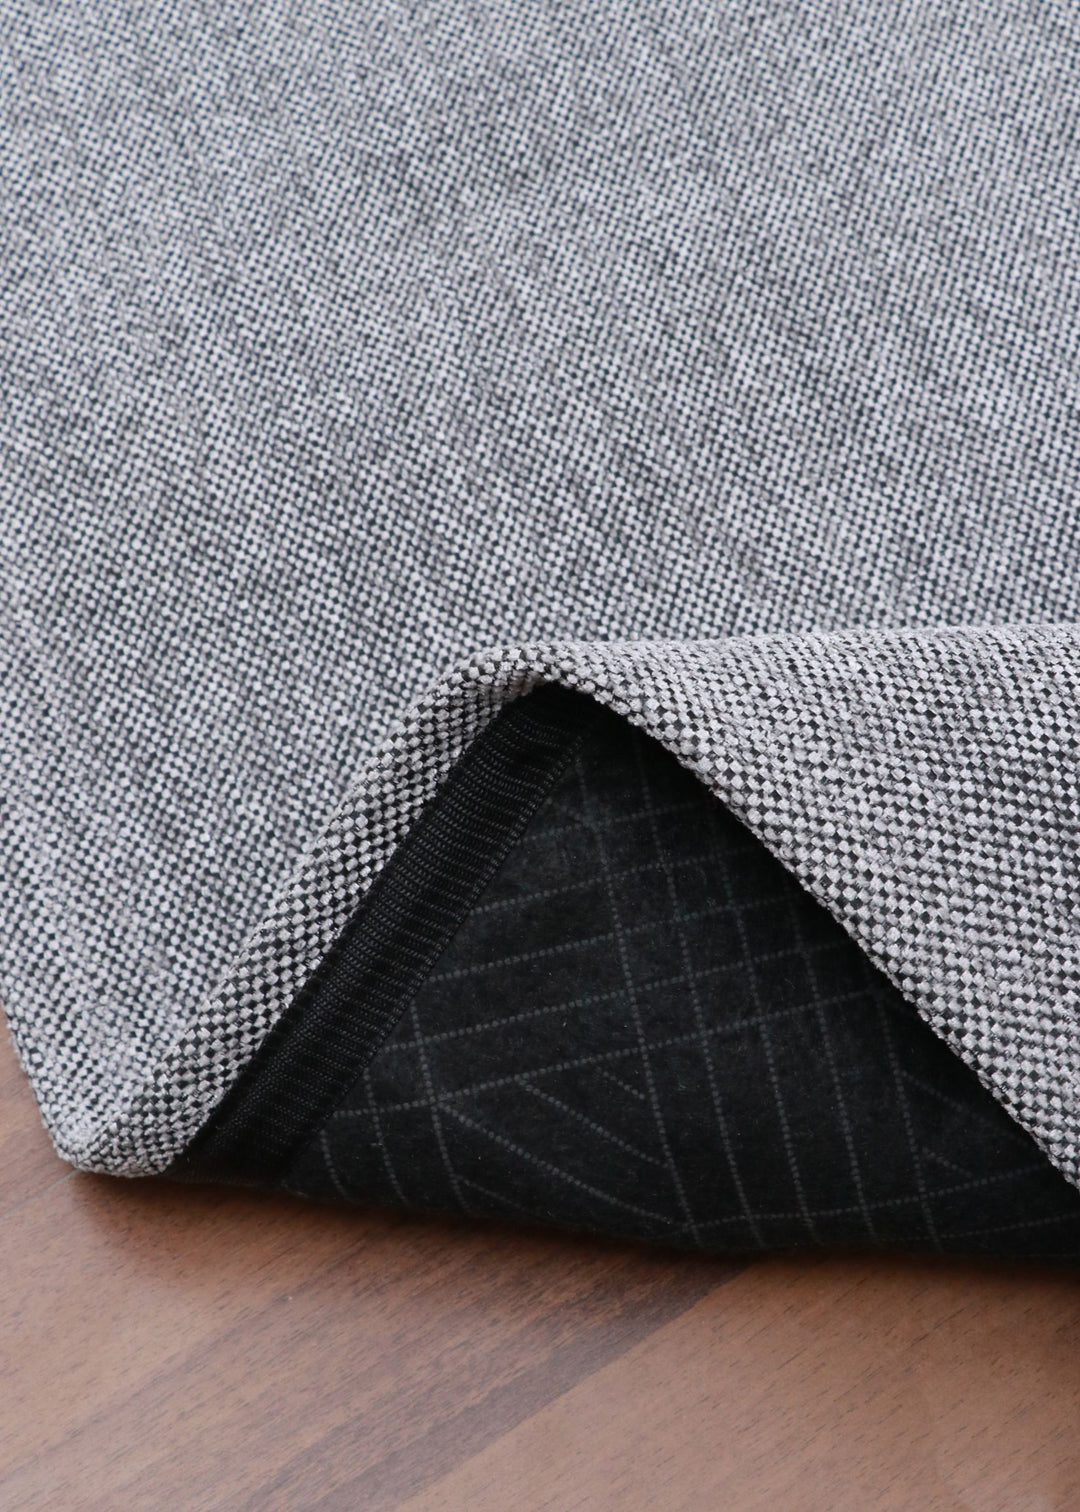 Gray & Black Weave Plain Rug